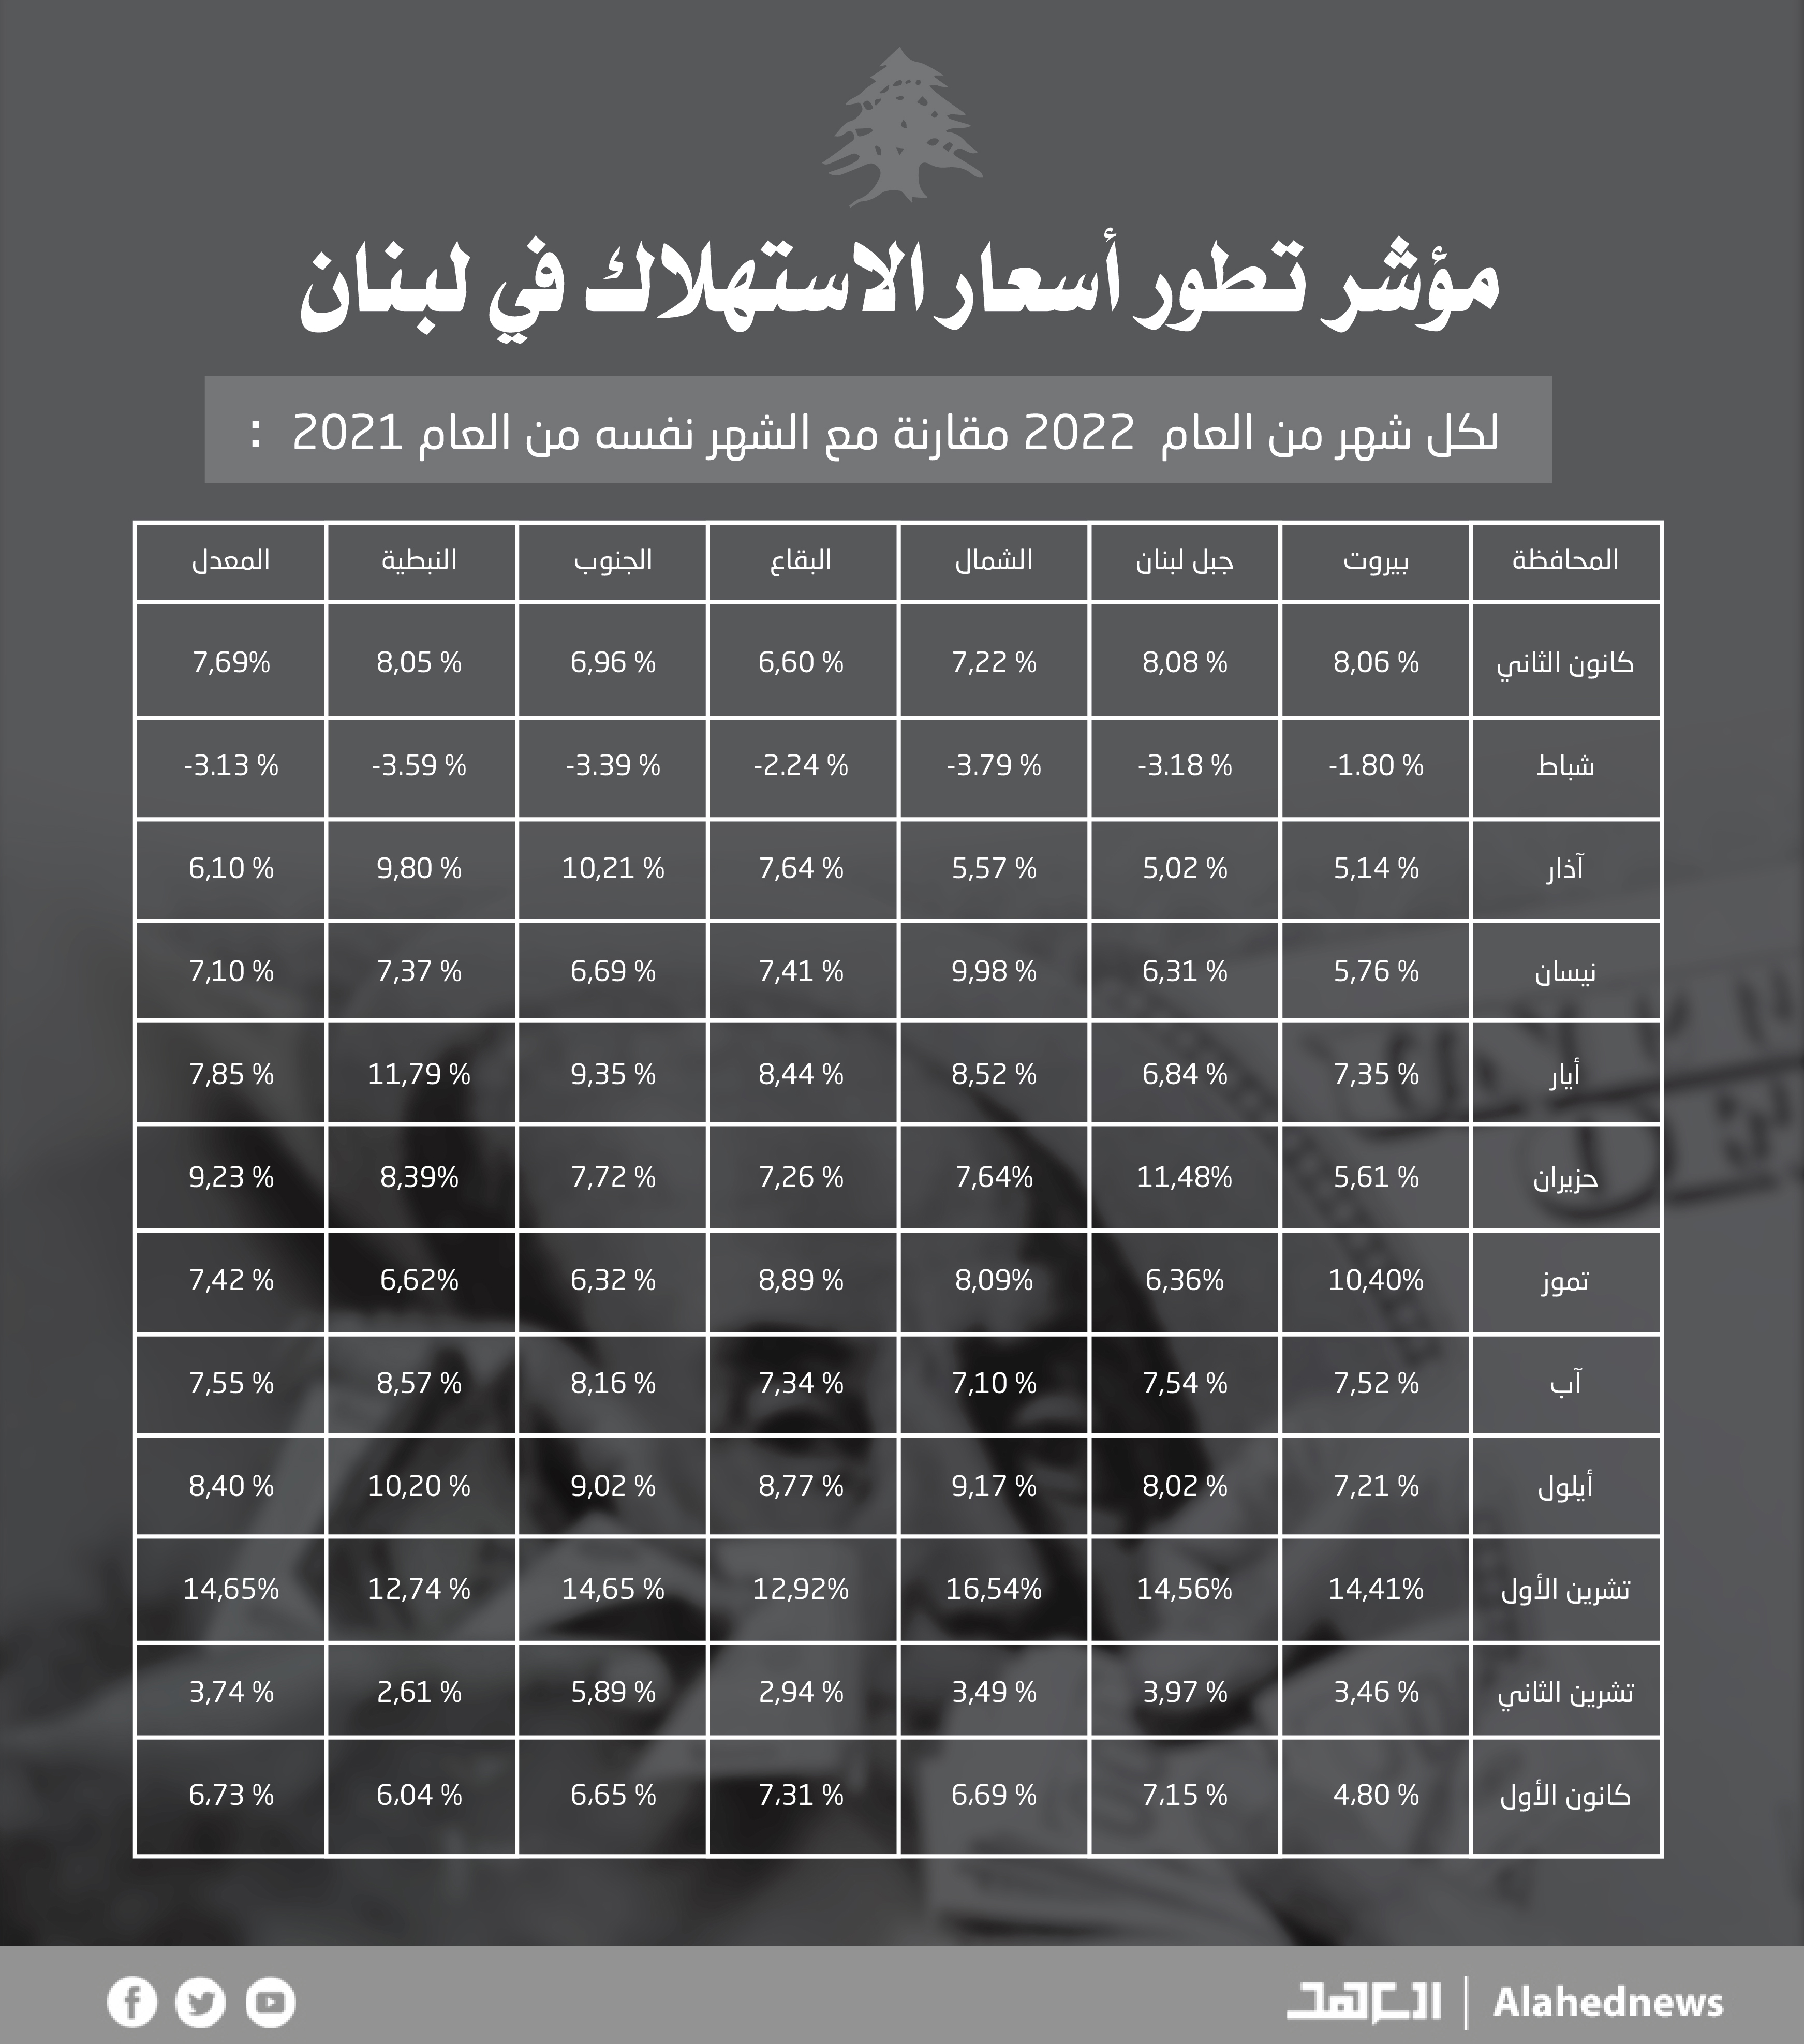 بالأرقام.. مؤشر تطور أسعار الاستهلاك في لبنان لعام 2022